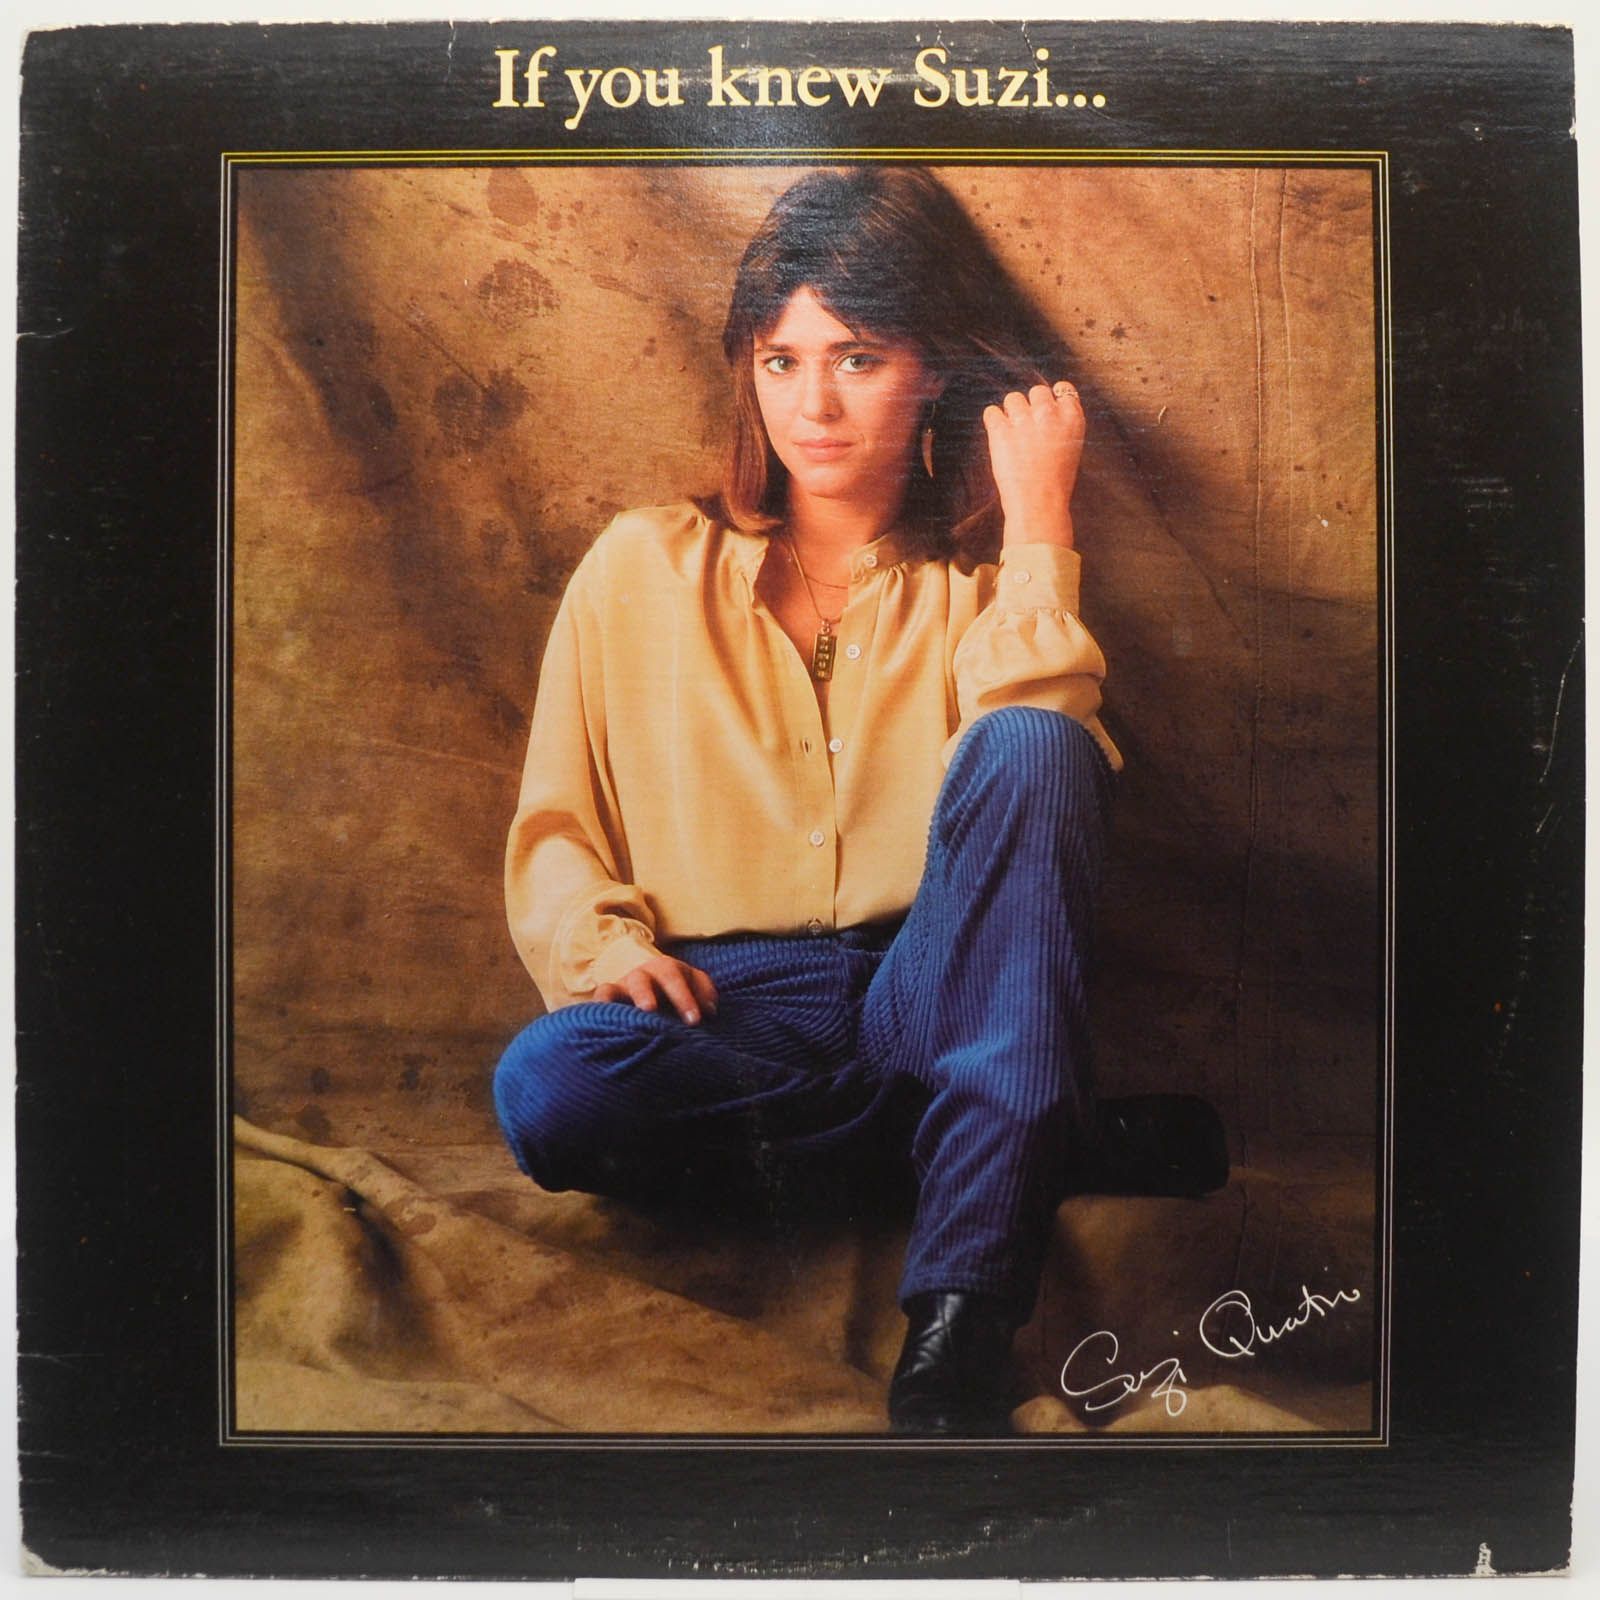 Suzi Quatro — If You Knew Suzi..., 1979